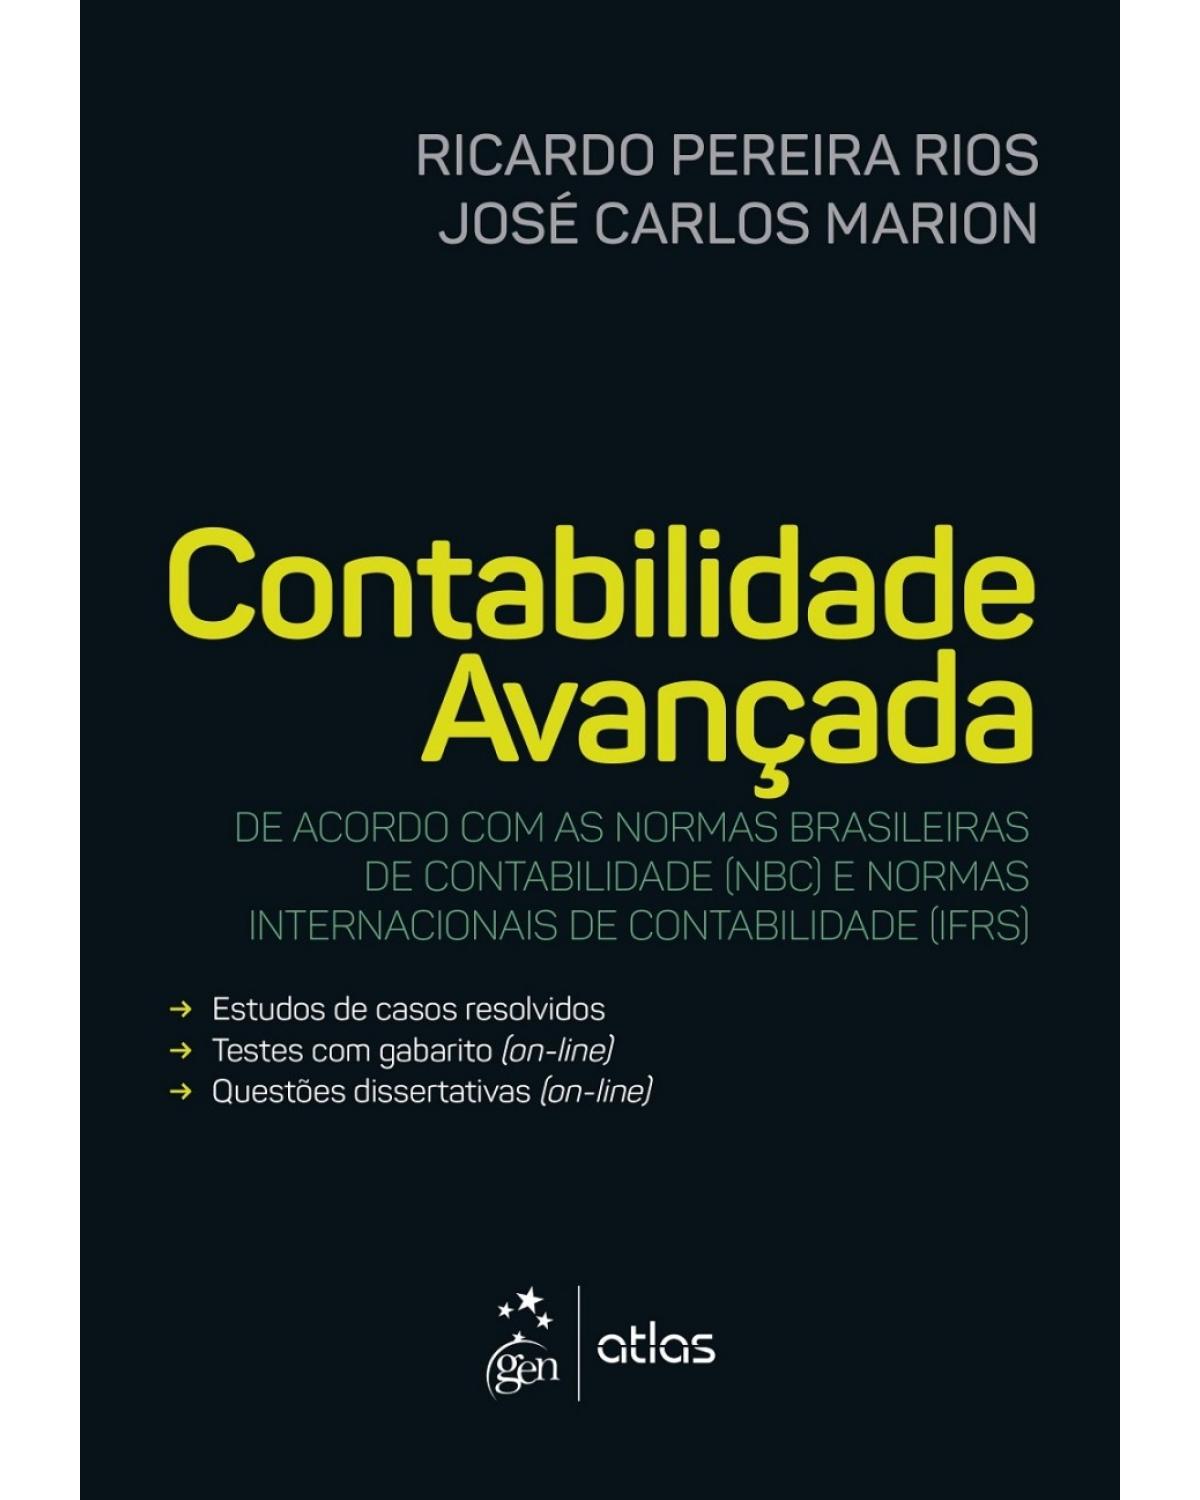 Contabilidade avançada - De acordo com as normas brasileiras de contabilidade (NBC) e normas internacionais de contabilidade (IFRS) - 1ª Edição | 2017